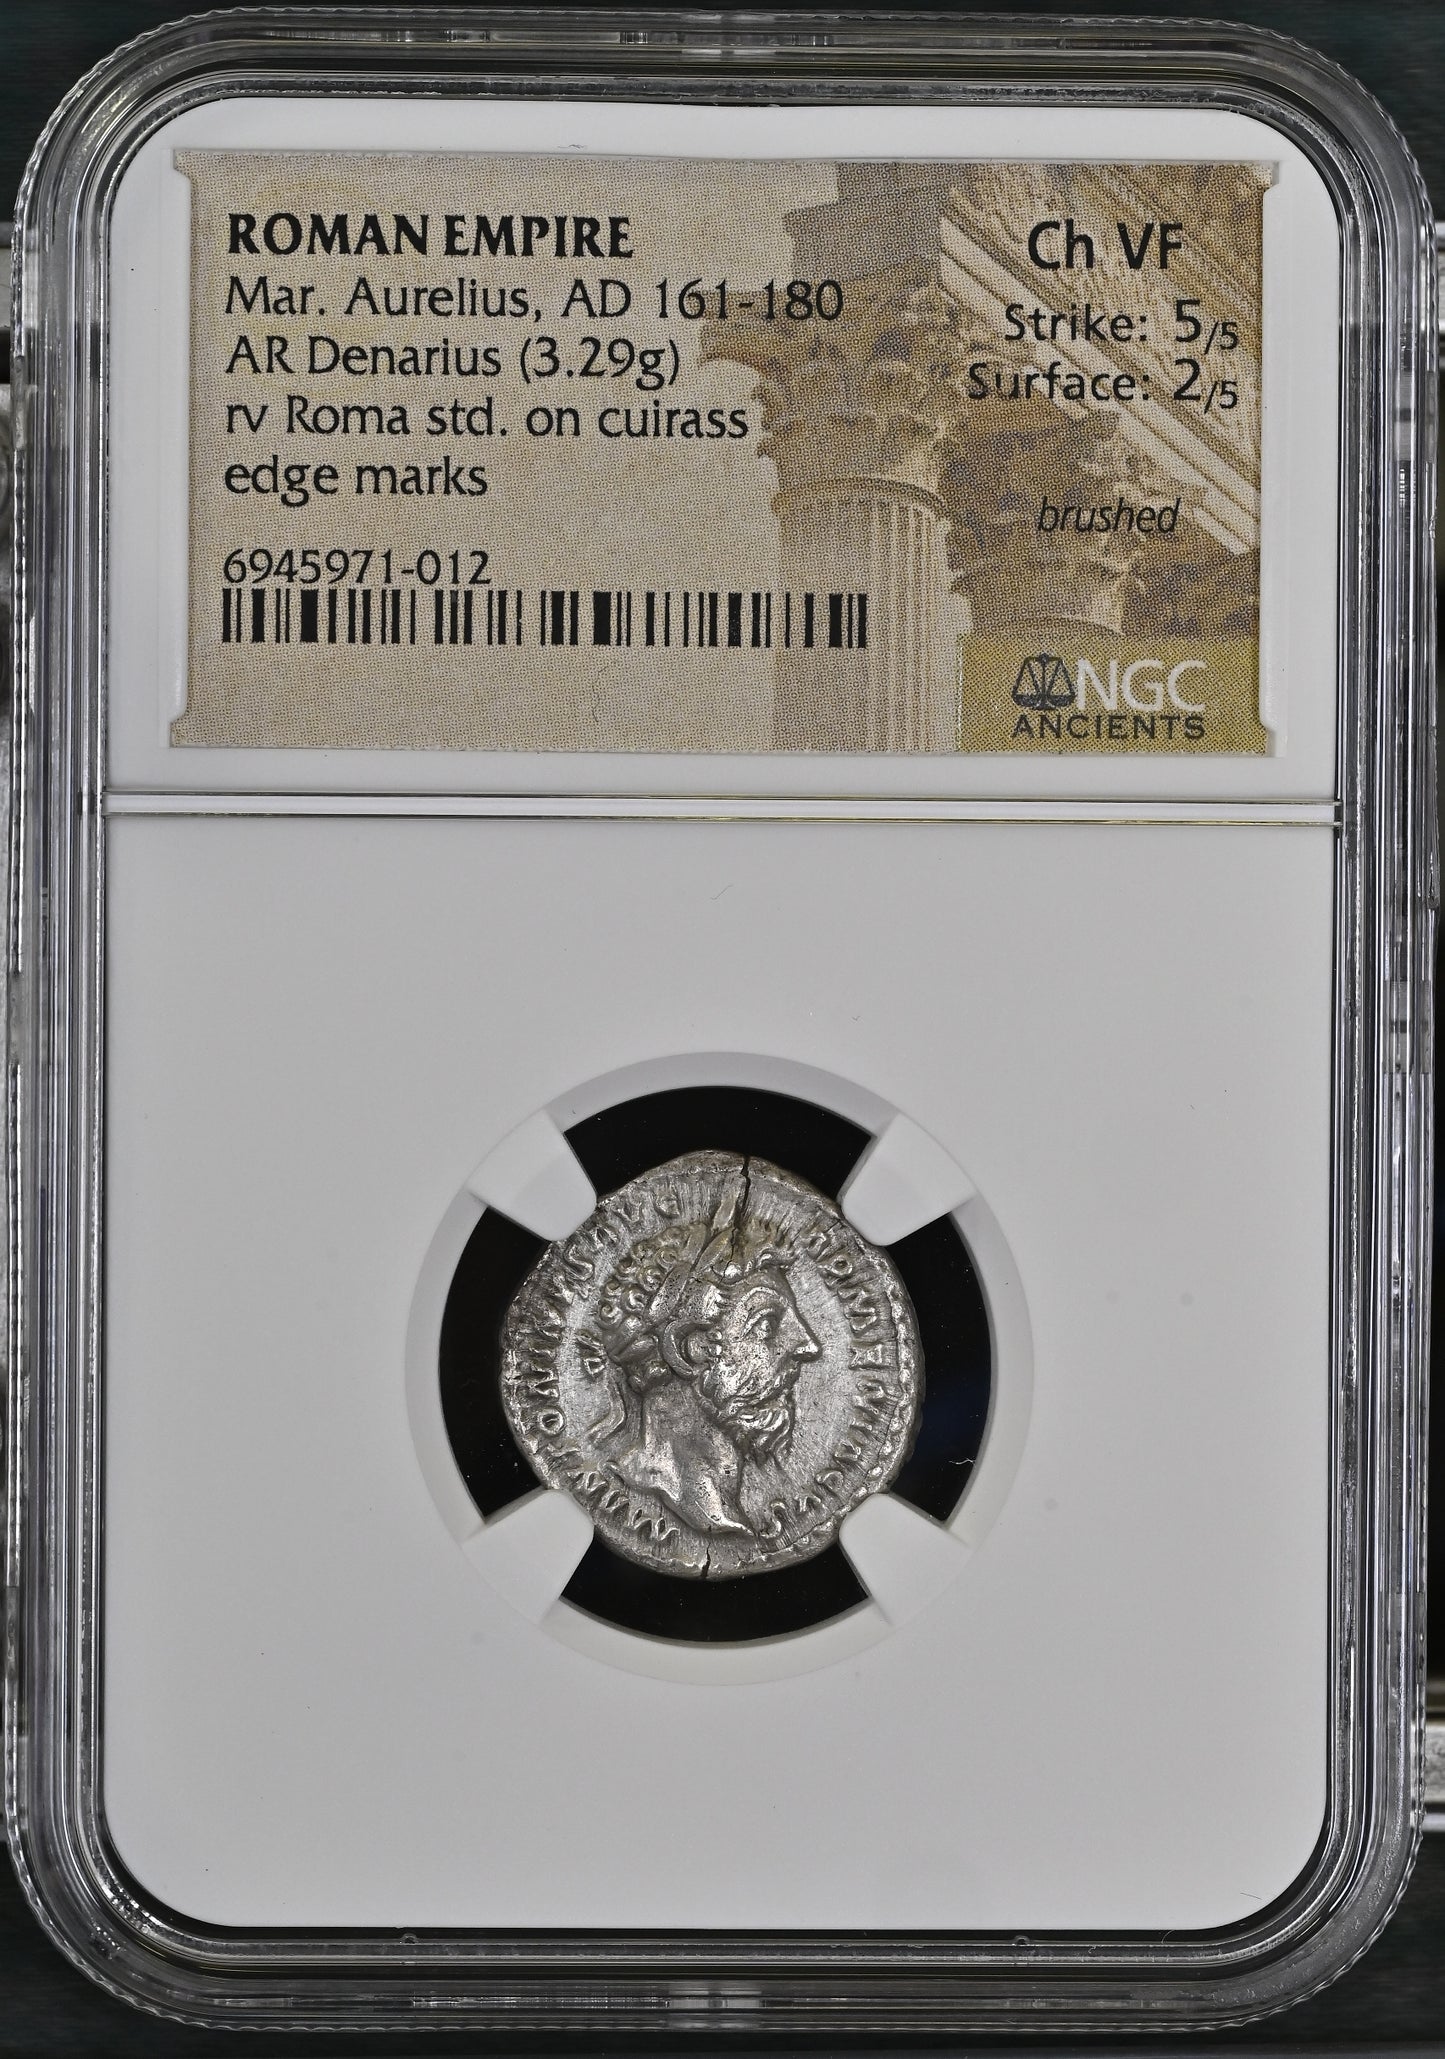 Roman Empire - Marcus Aurelius - Silver Denarius - NGC Ch VF - RIC:155